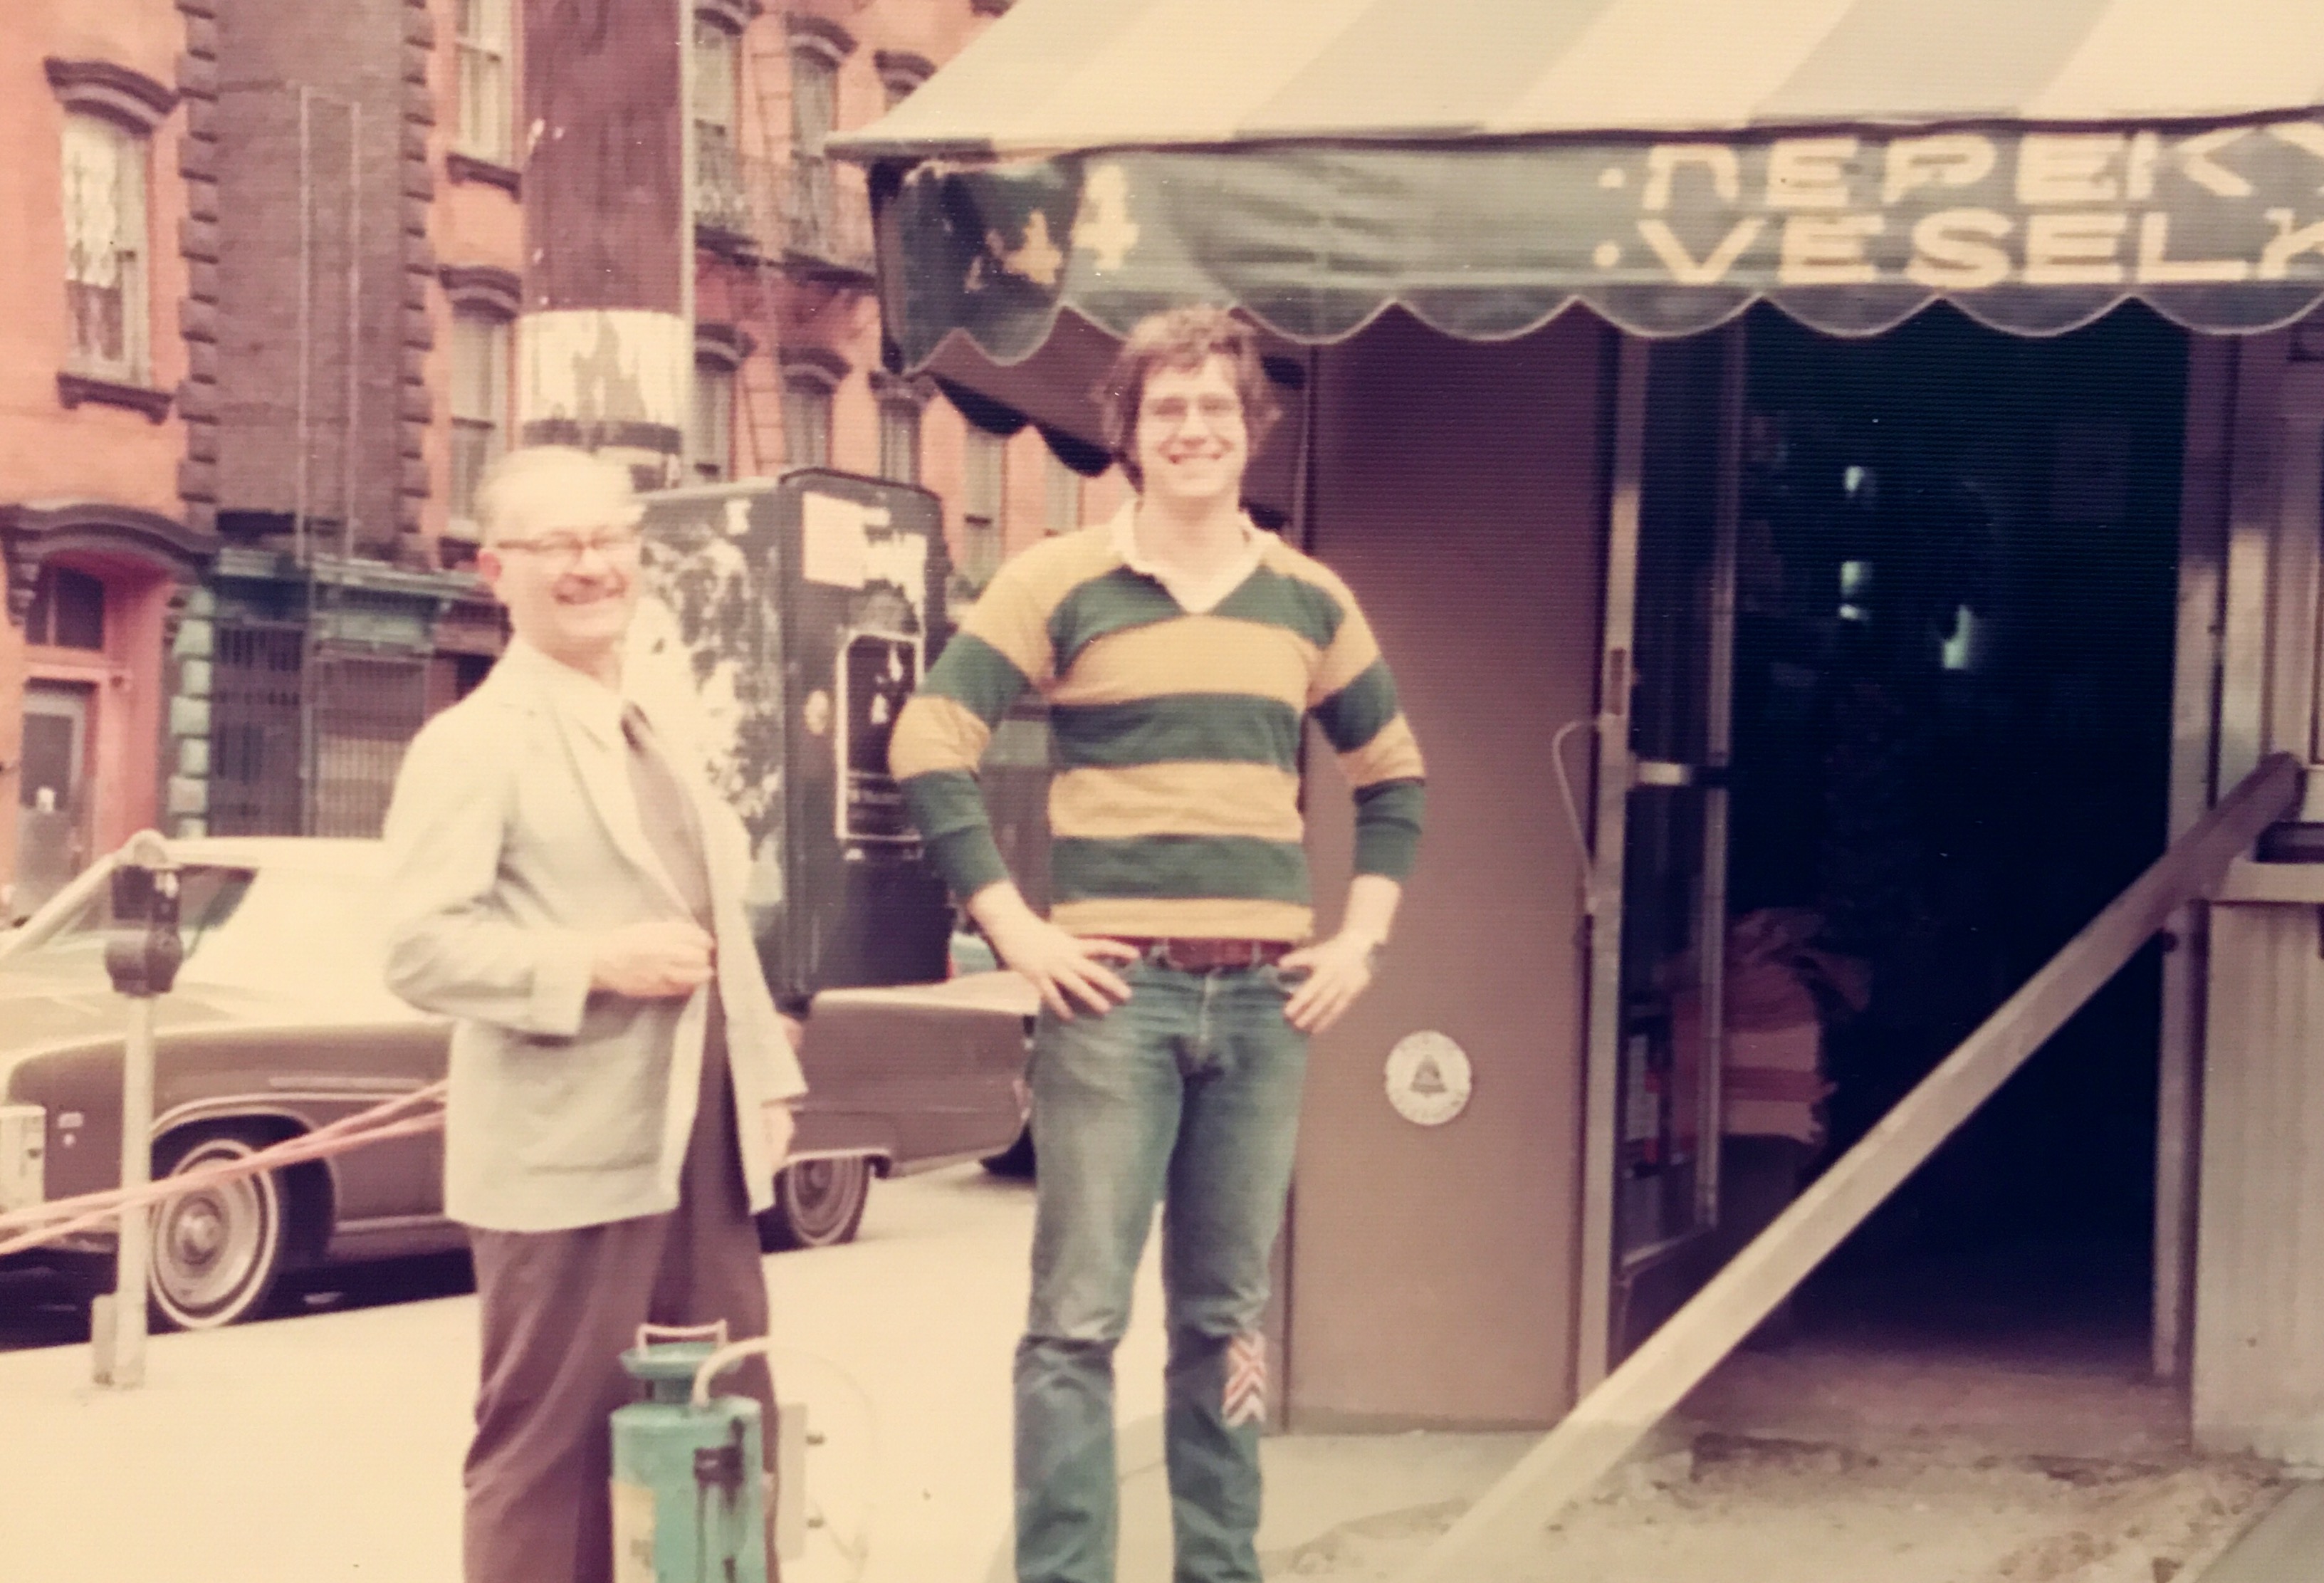 1978... Megister and Tom in front of Veselka